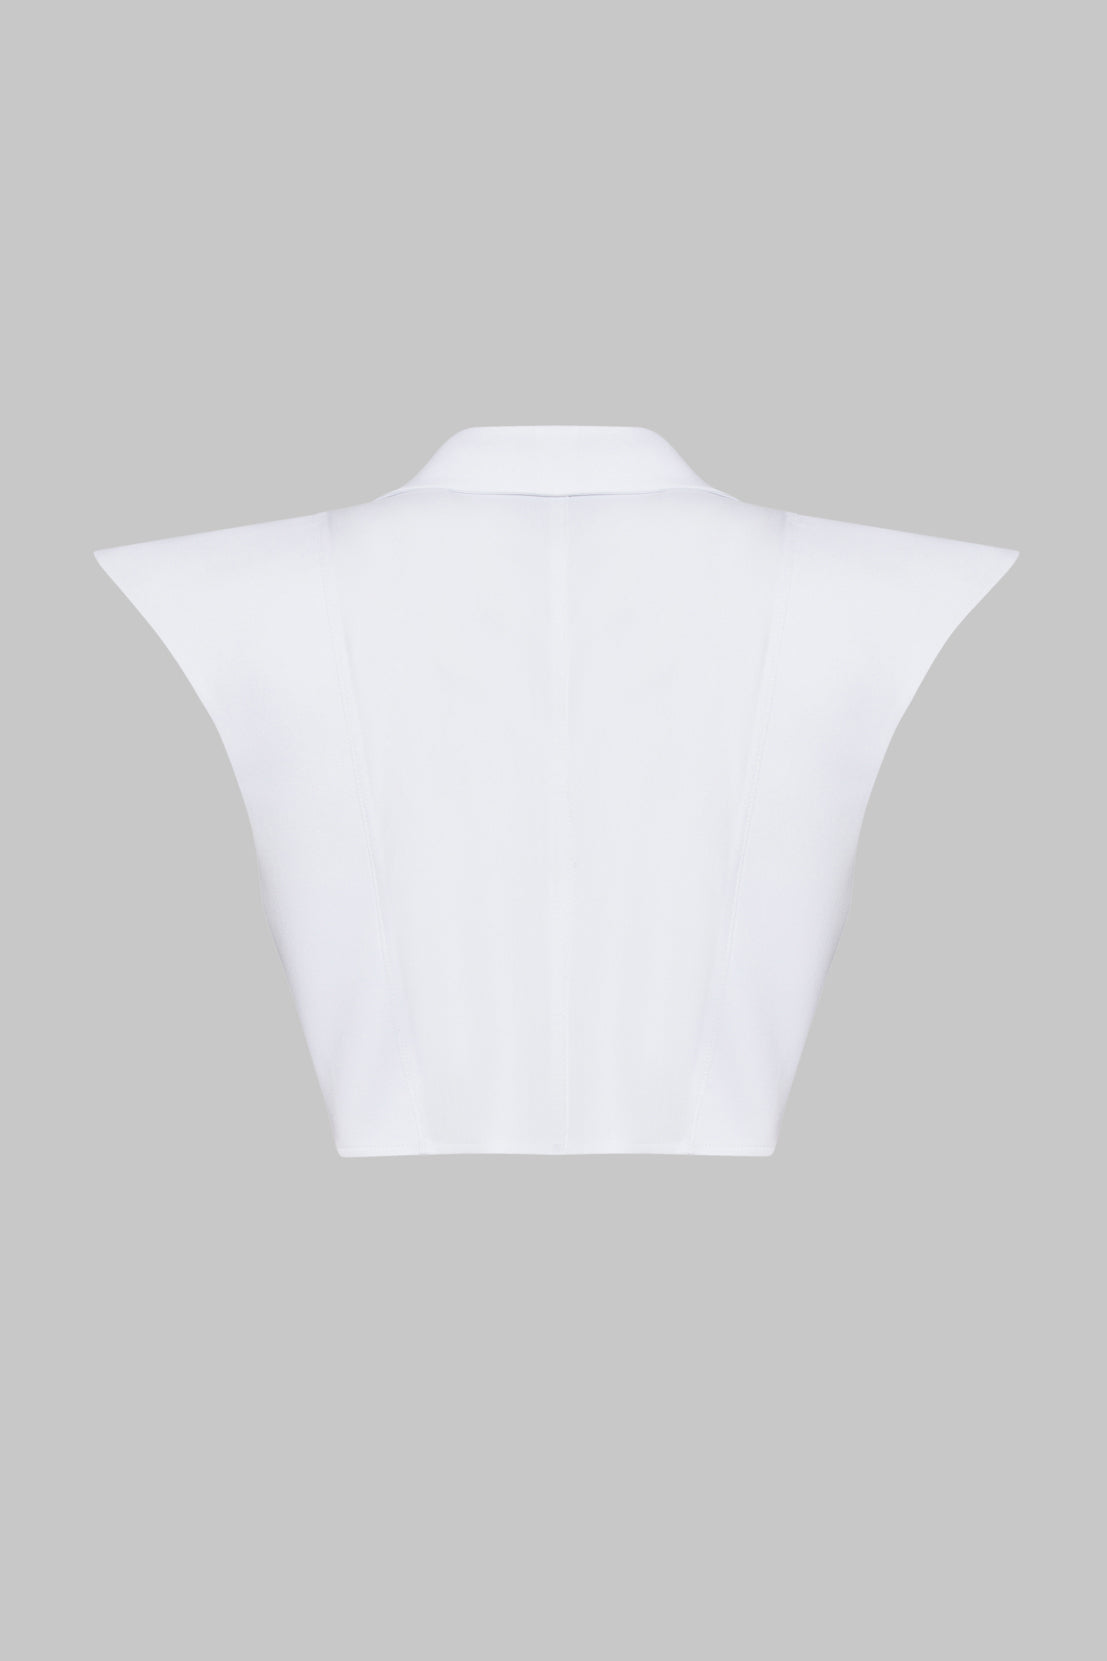 White Long Collar Shirt